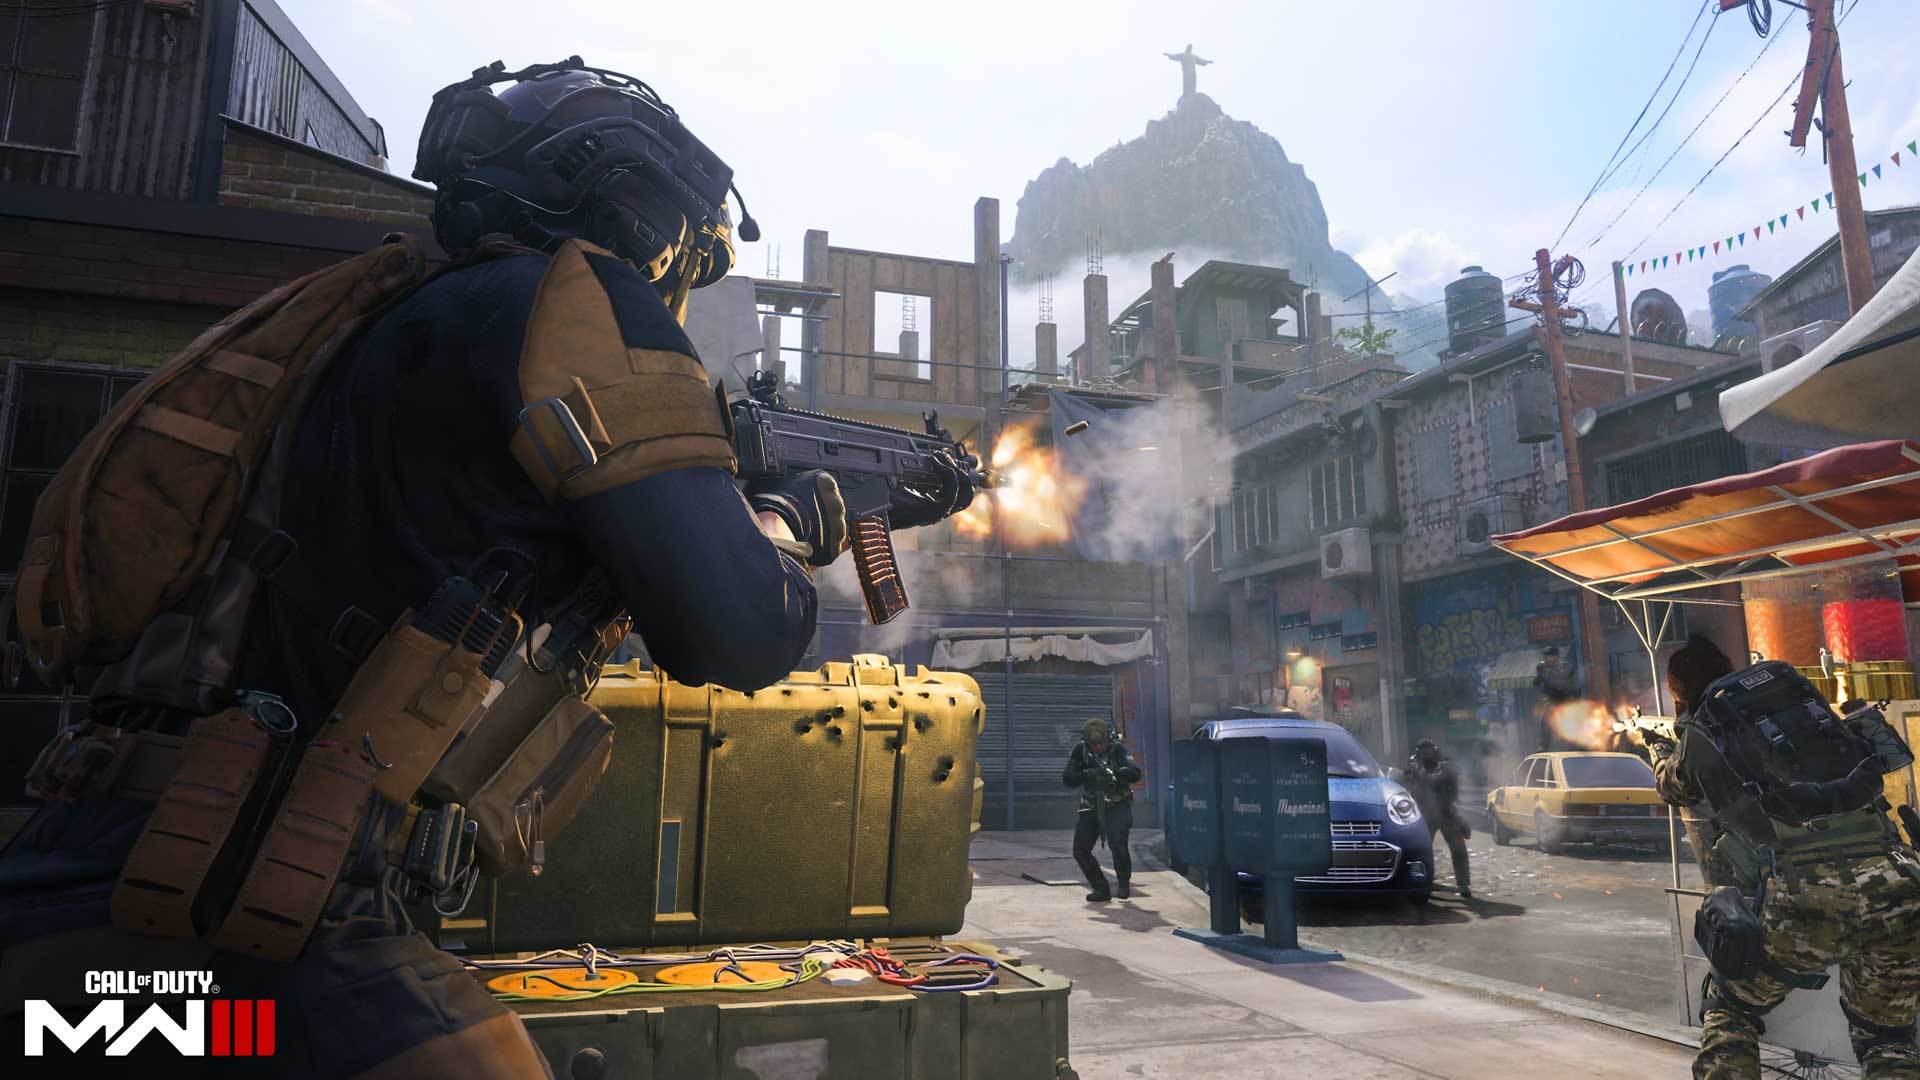 Impressioni sulla beta di Call of Duty: Modern Warfare III: un thriller d’azione nostalgico